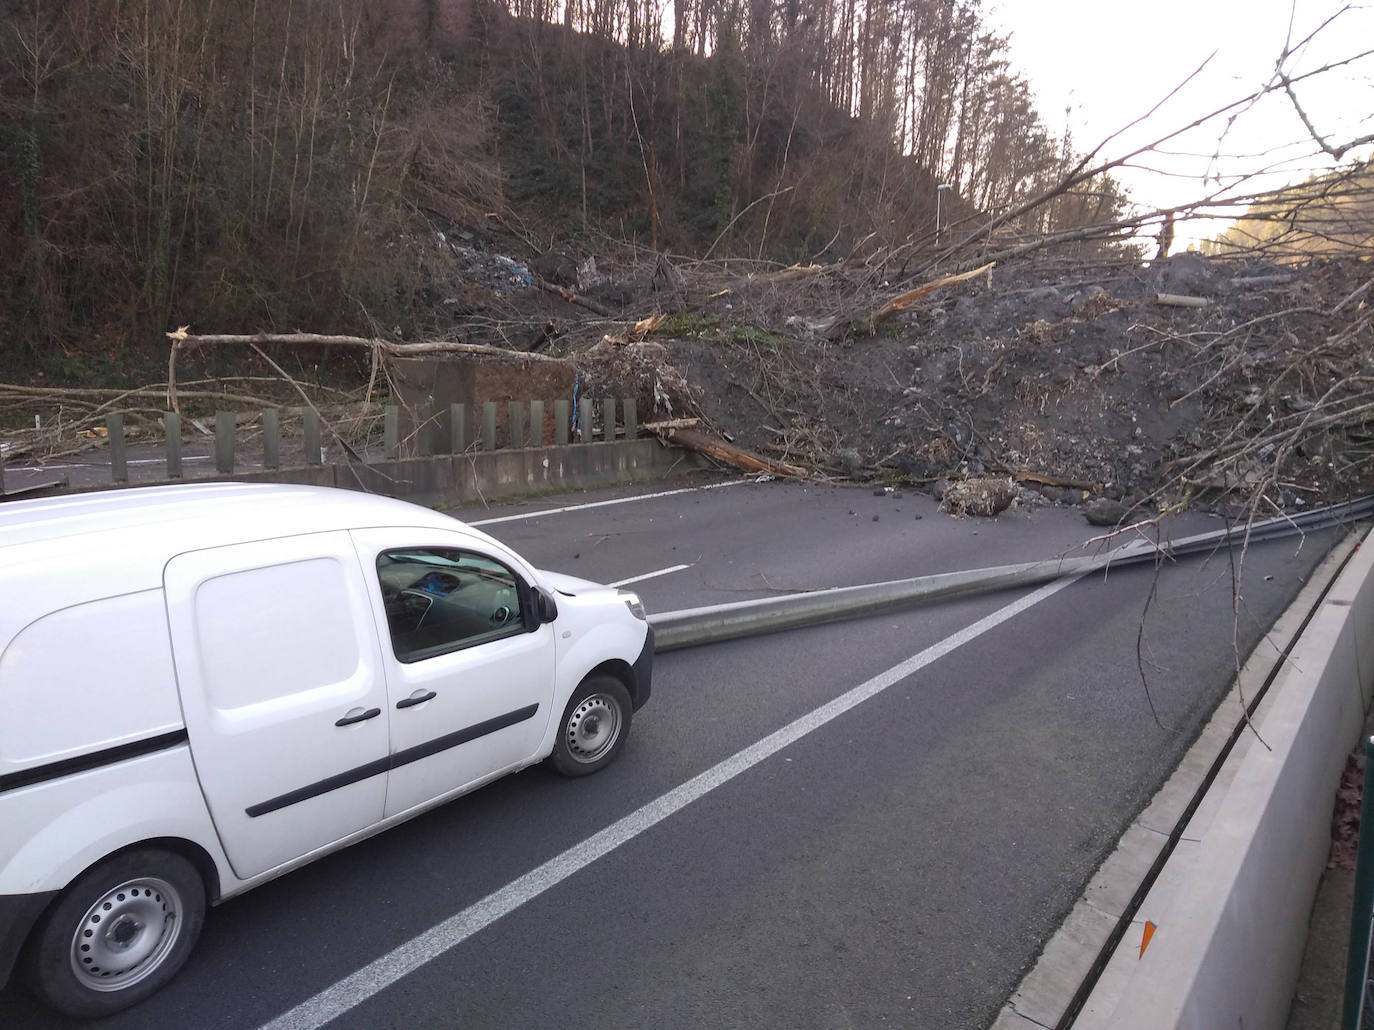 La autopista AP-8 está cortada en ambos sentidos a la altura de Zaldibar por un desprendimiento de tierras que ha provocado la caída de un árbol de grandes dimensiones sobre la calzada. Según ha informado el Departamento de Seguridad, el tráfico sentido Irun se está desviando por la salida de Ermua y sentido Cantabria por la salida de Eibar. 